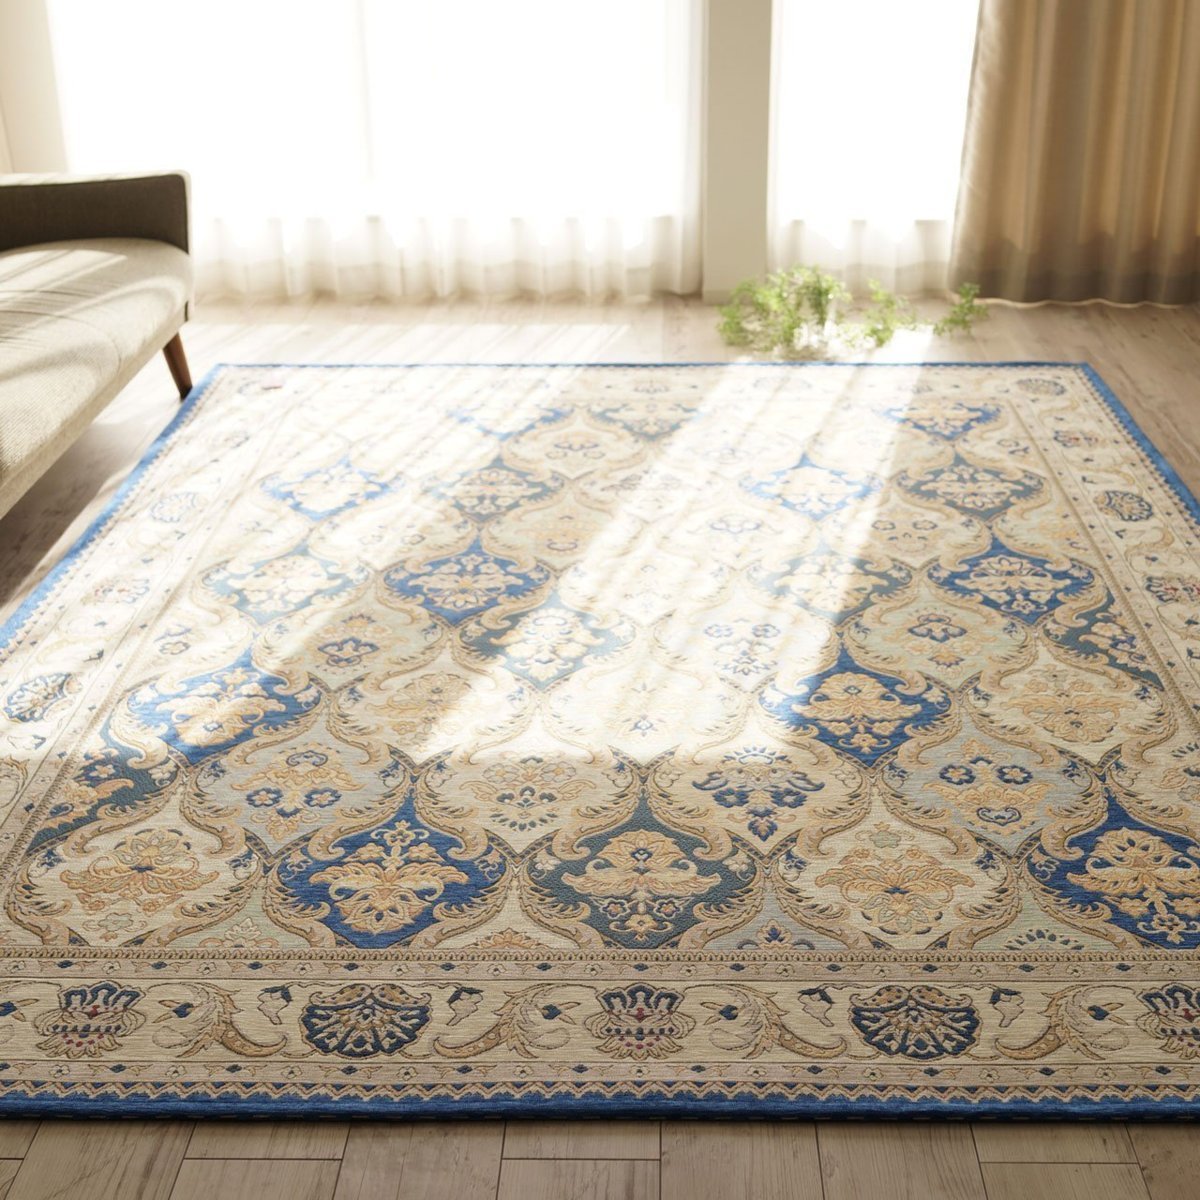 特価商品 クラシック 豪華 絨毯 カーペット デザイン ブルー 畳 3 約